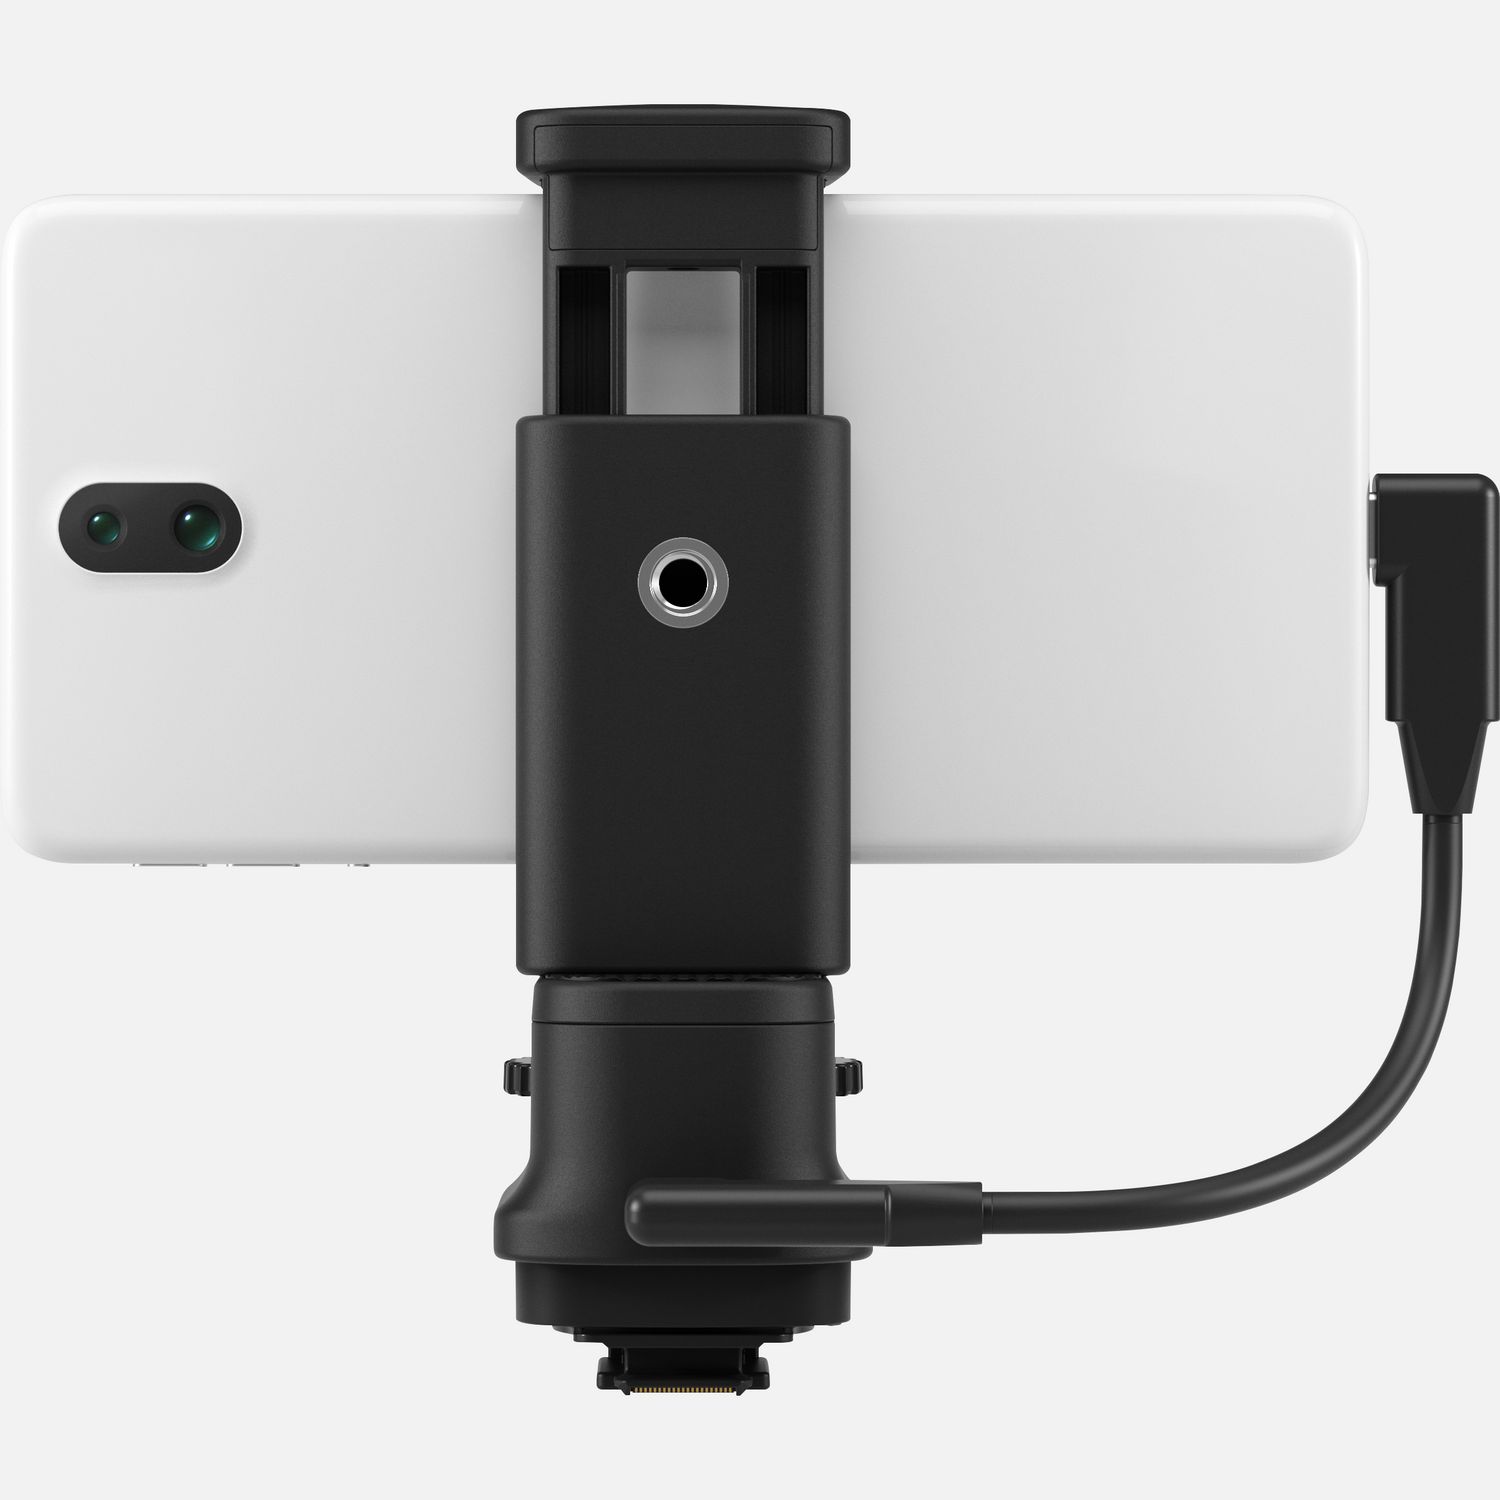 Image of Adattatore per slitta multifunzione Canon AD-P1 per collegamento smartphone Android